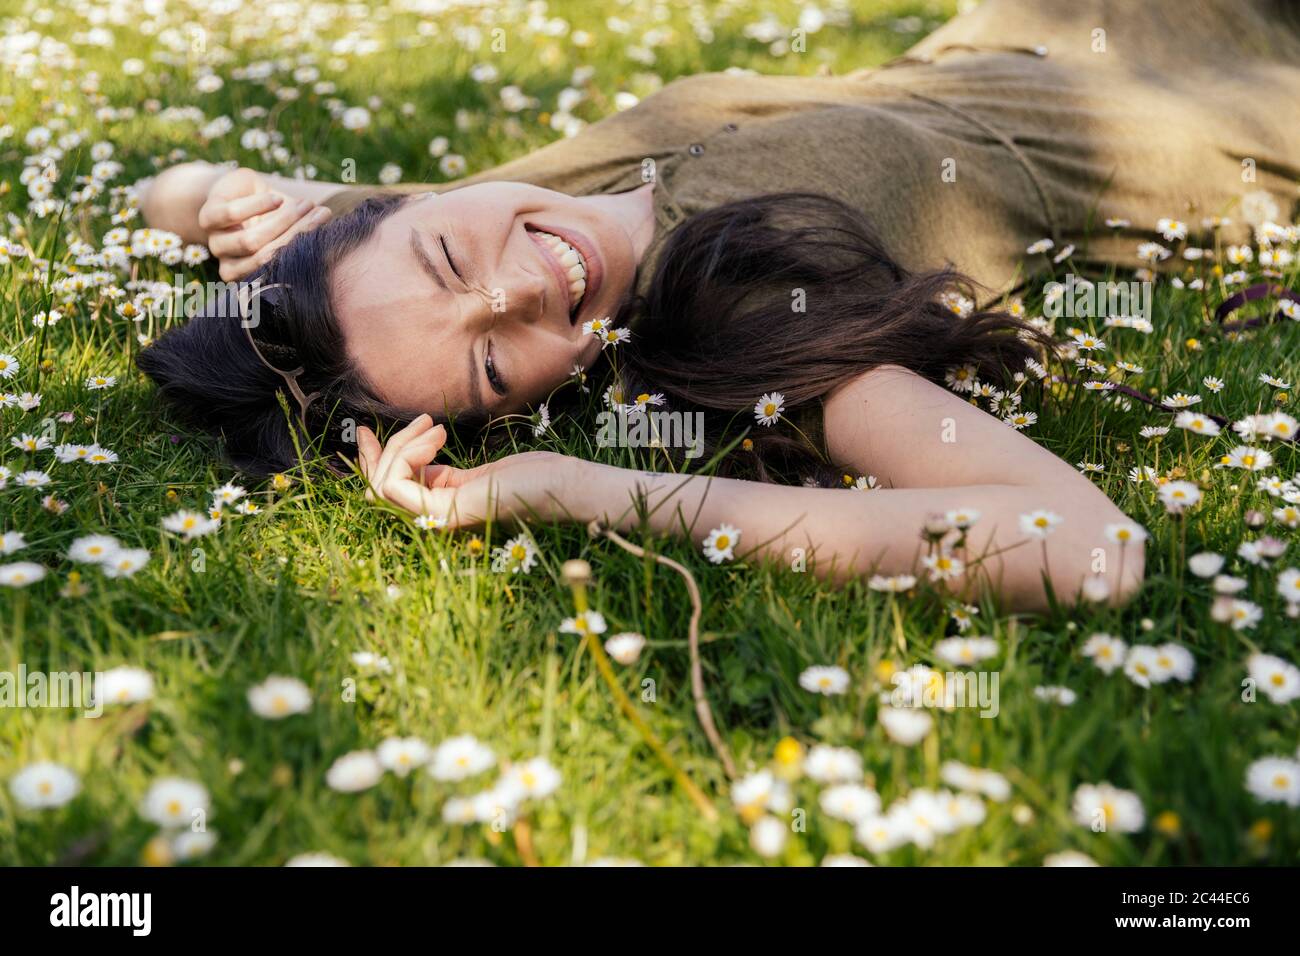 Donna felice godendo il suo tempo libero mentre si sdraiava su erba con margherite Foto Stock